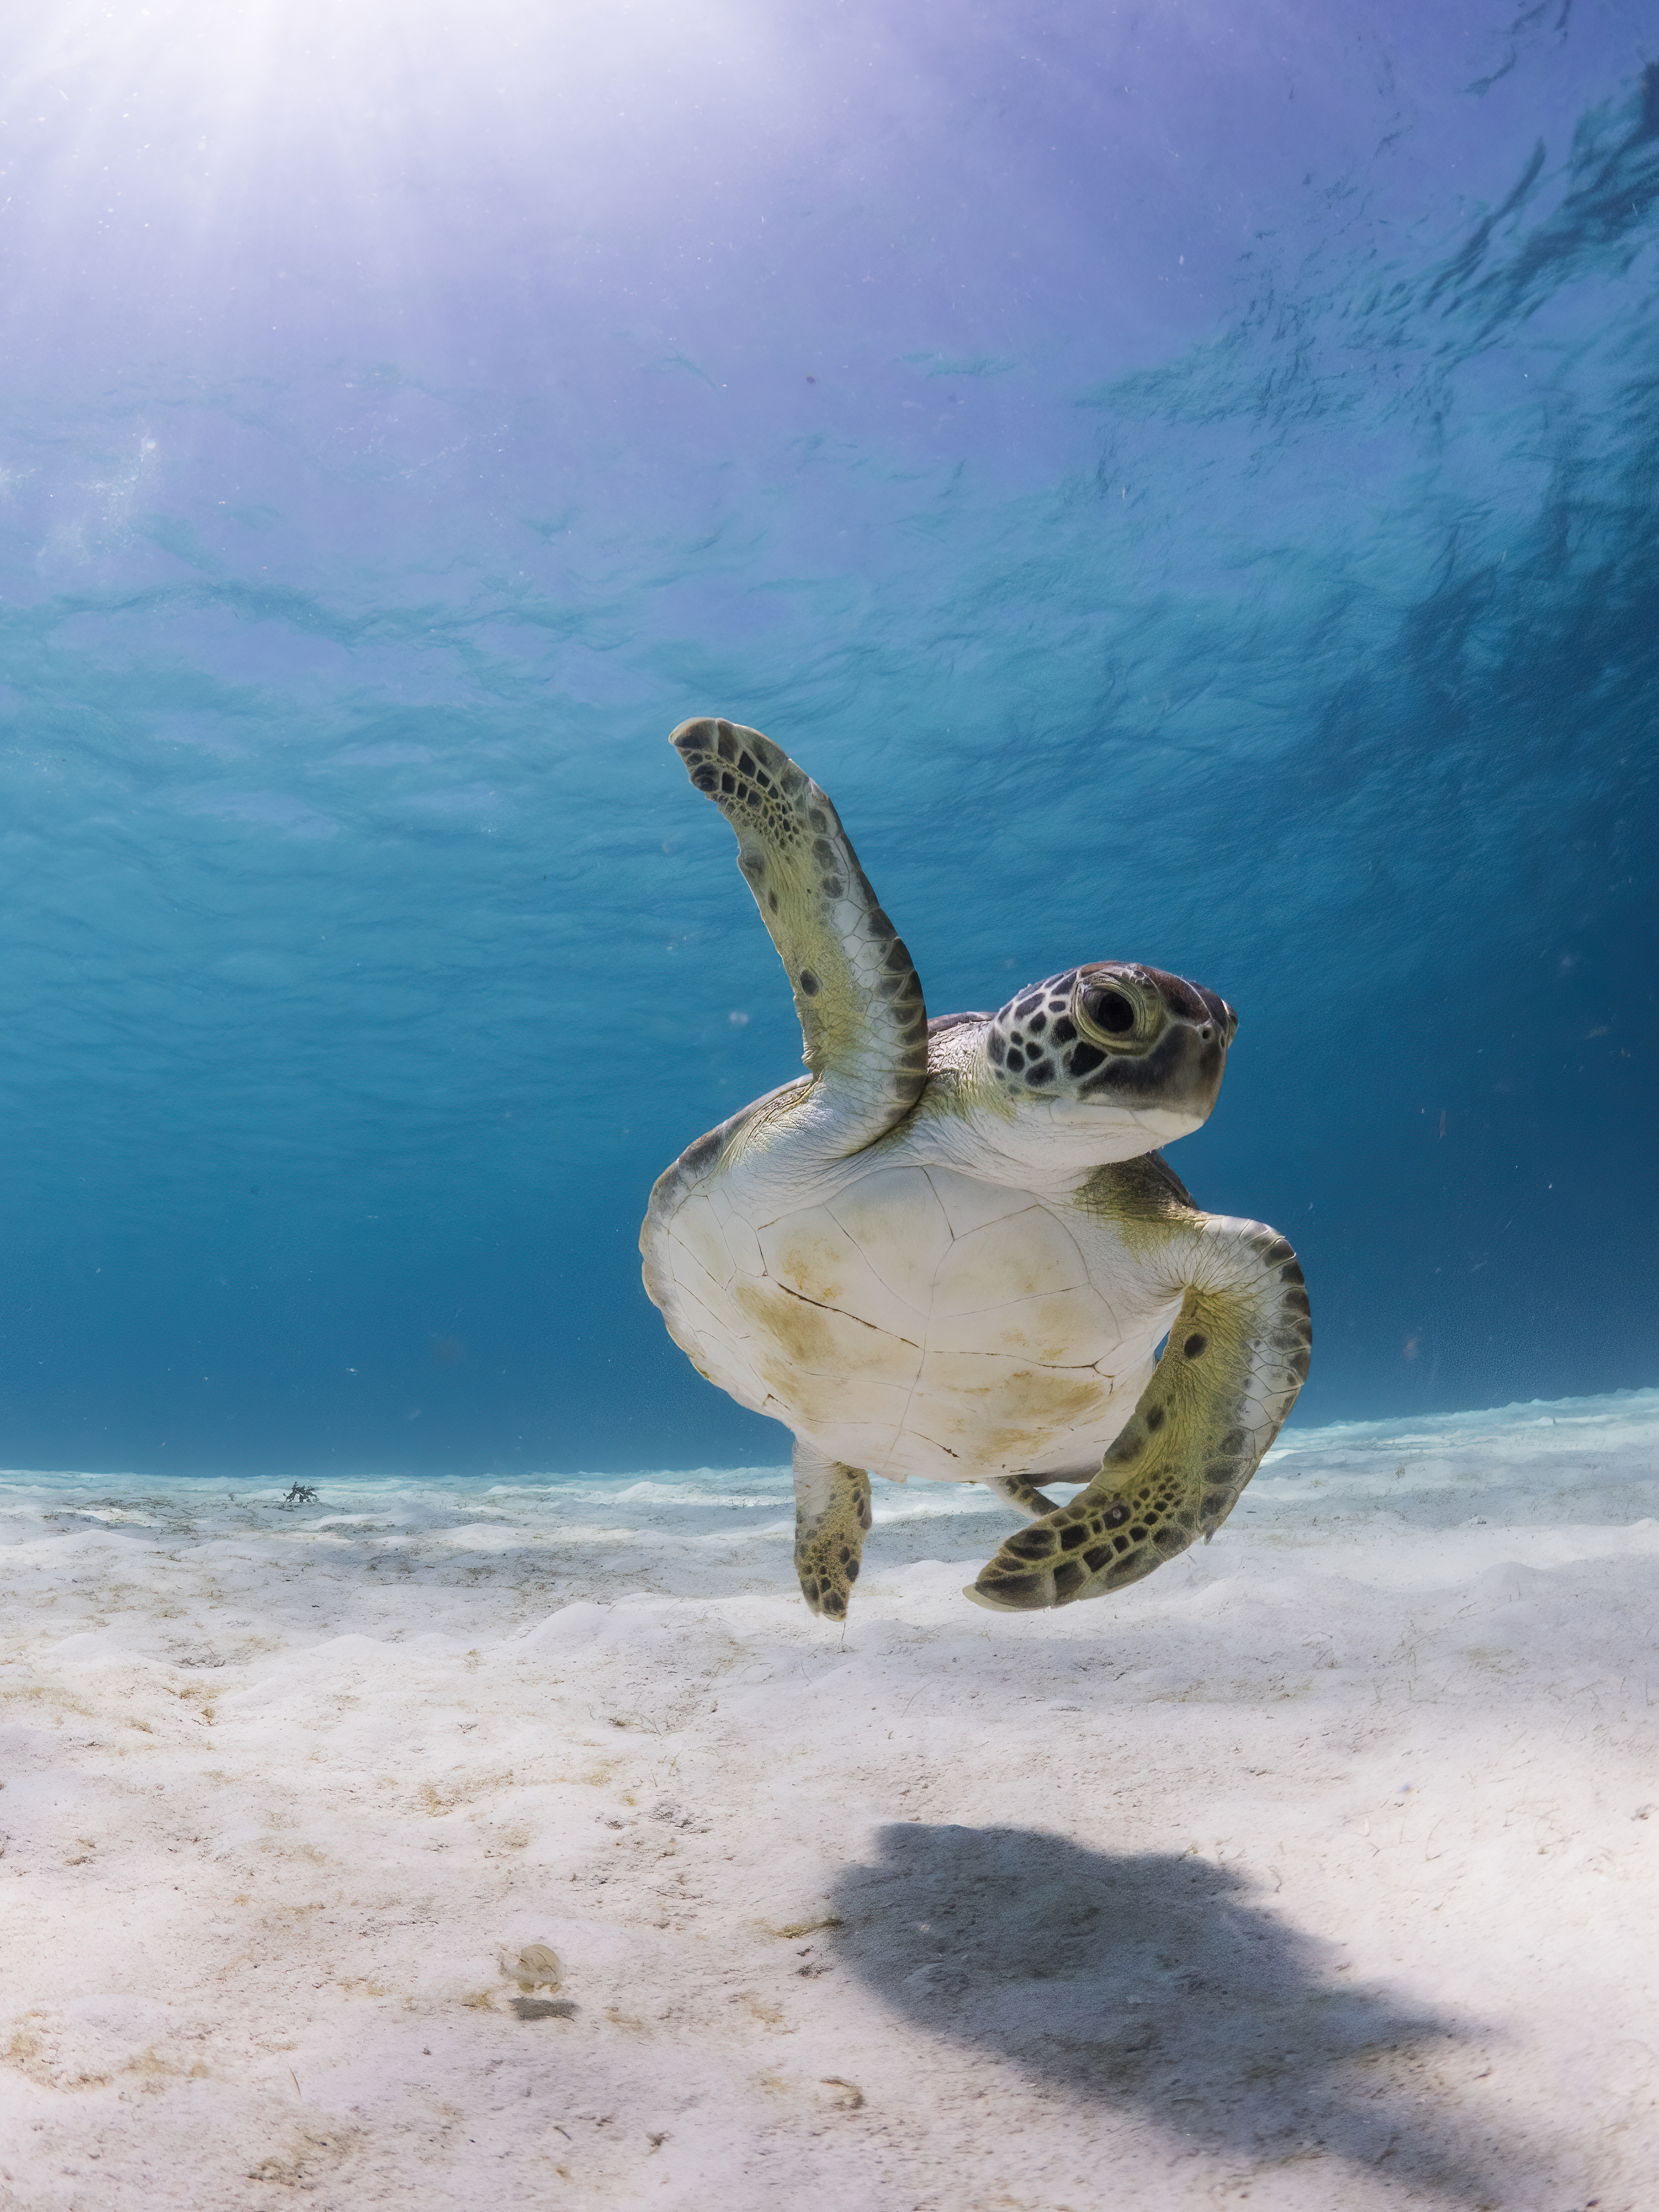 Uma tartaruga marinha nada em águas claras com uma barbatana levantada acima do corpo.